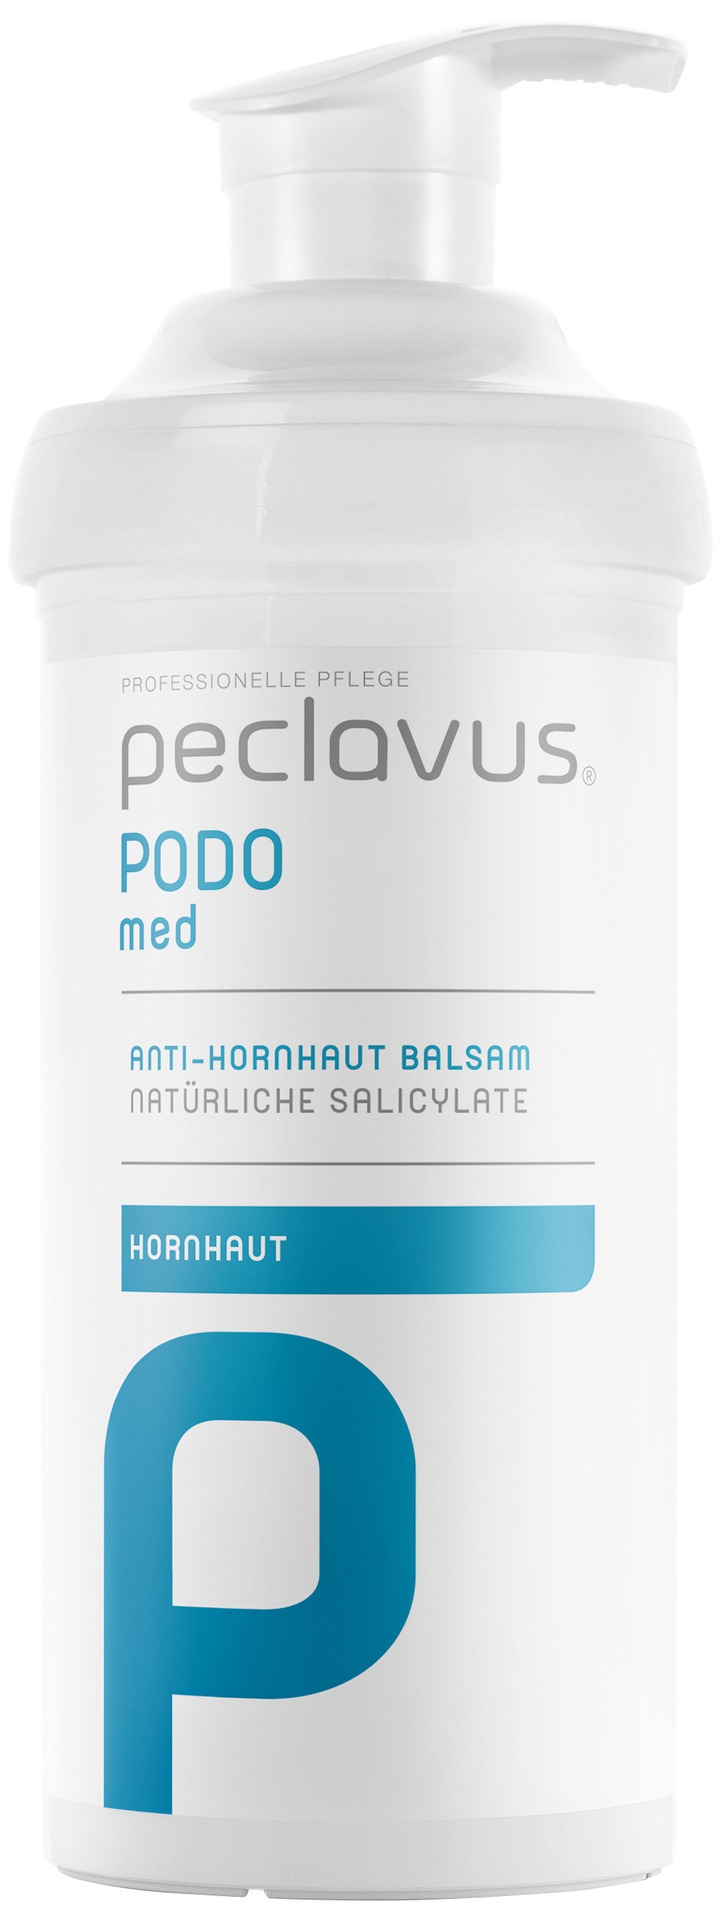 Peclavus PODOmed Anti-Hornhaut Balsam | 500 ml